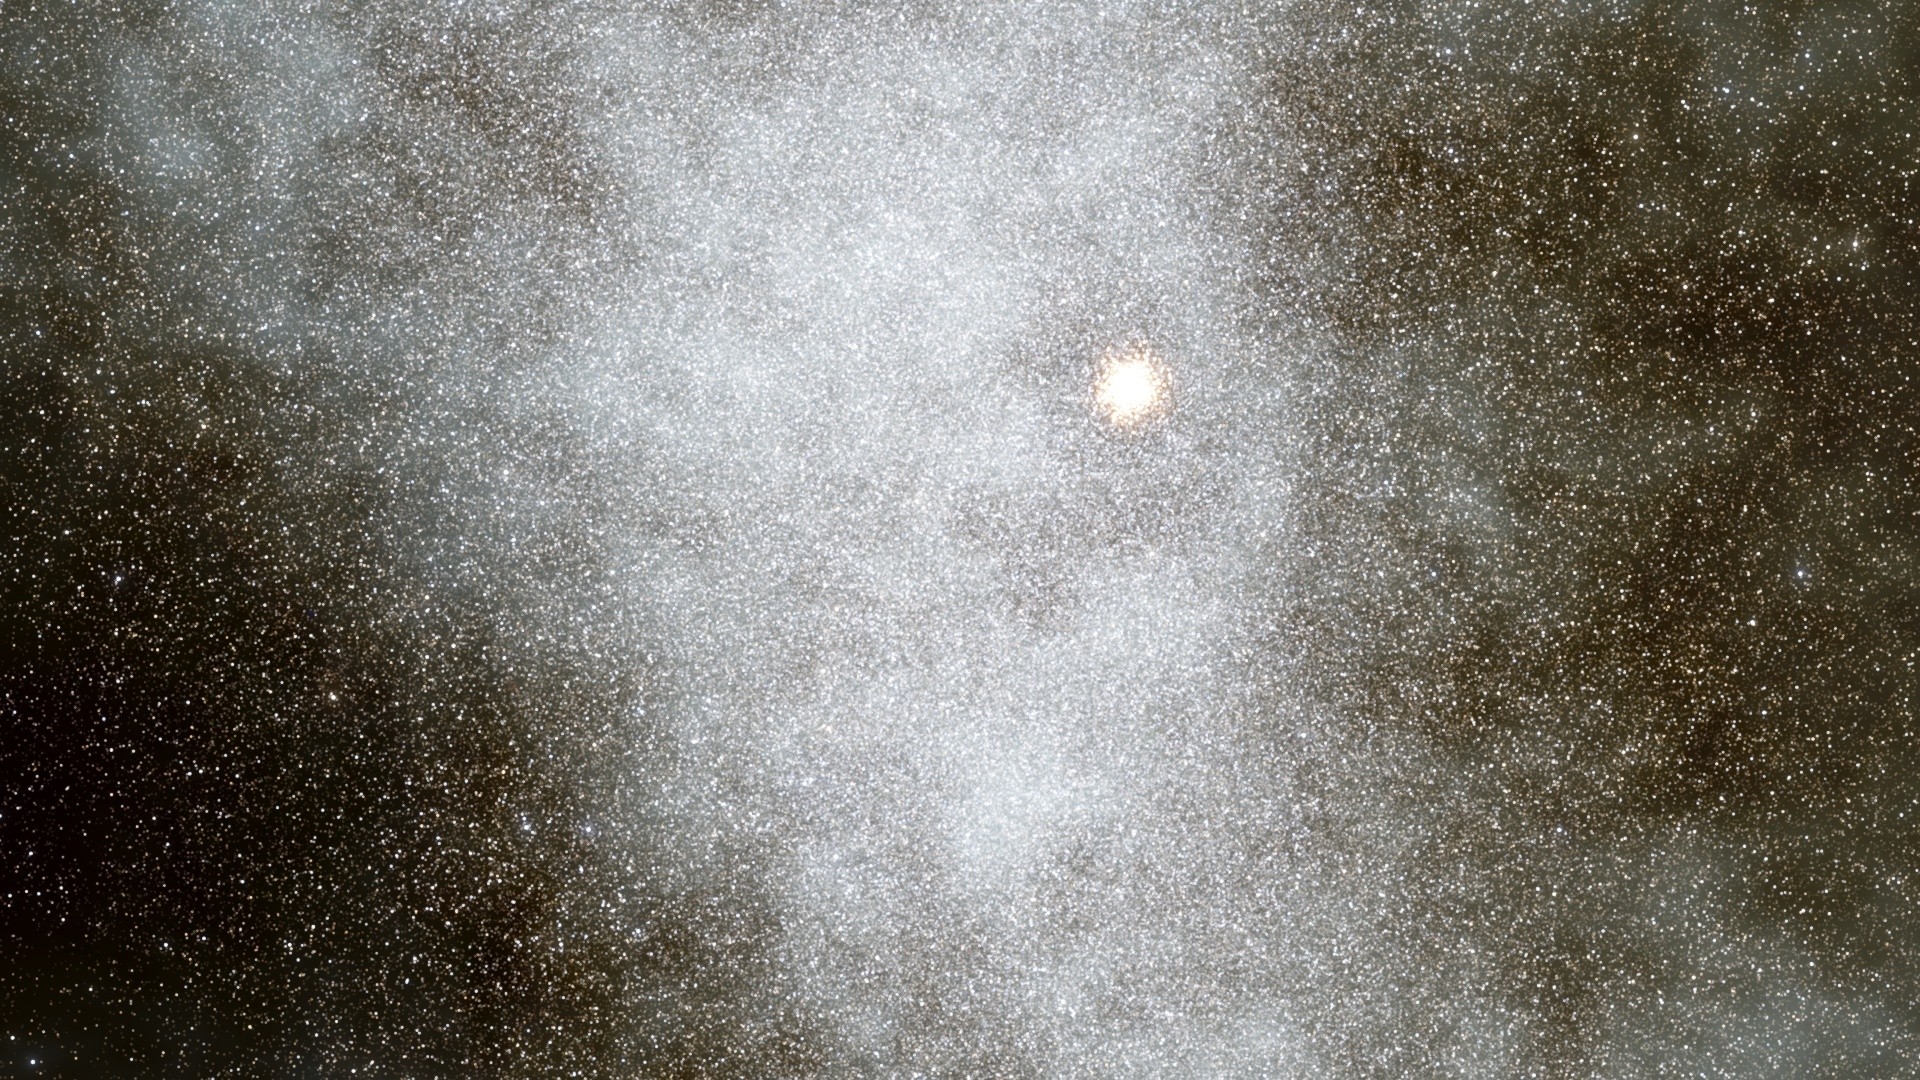 Space Engine Space Universe Galaxy Stars Nebula 1920x1080